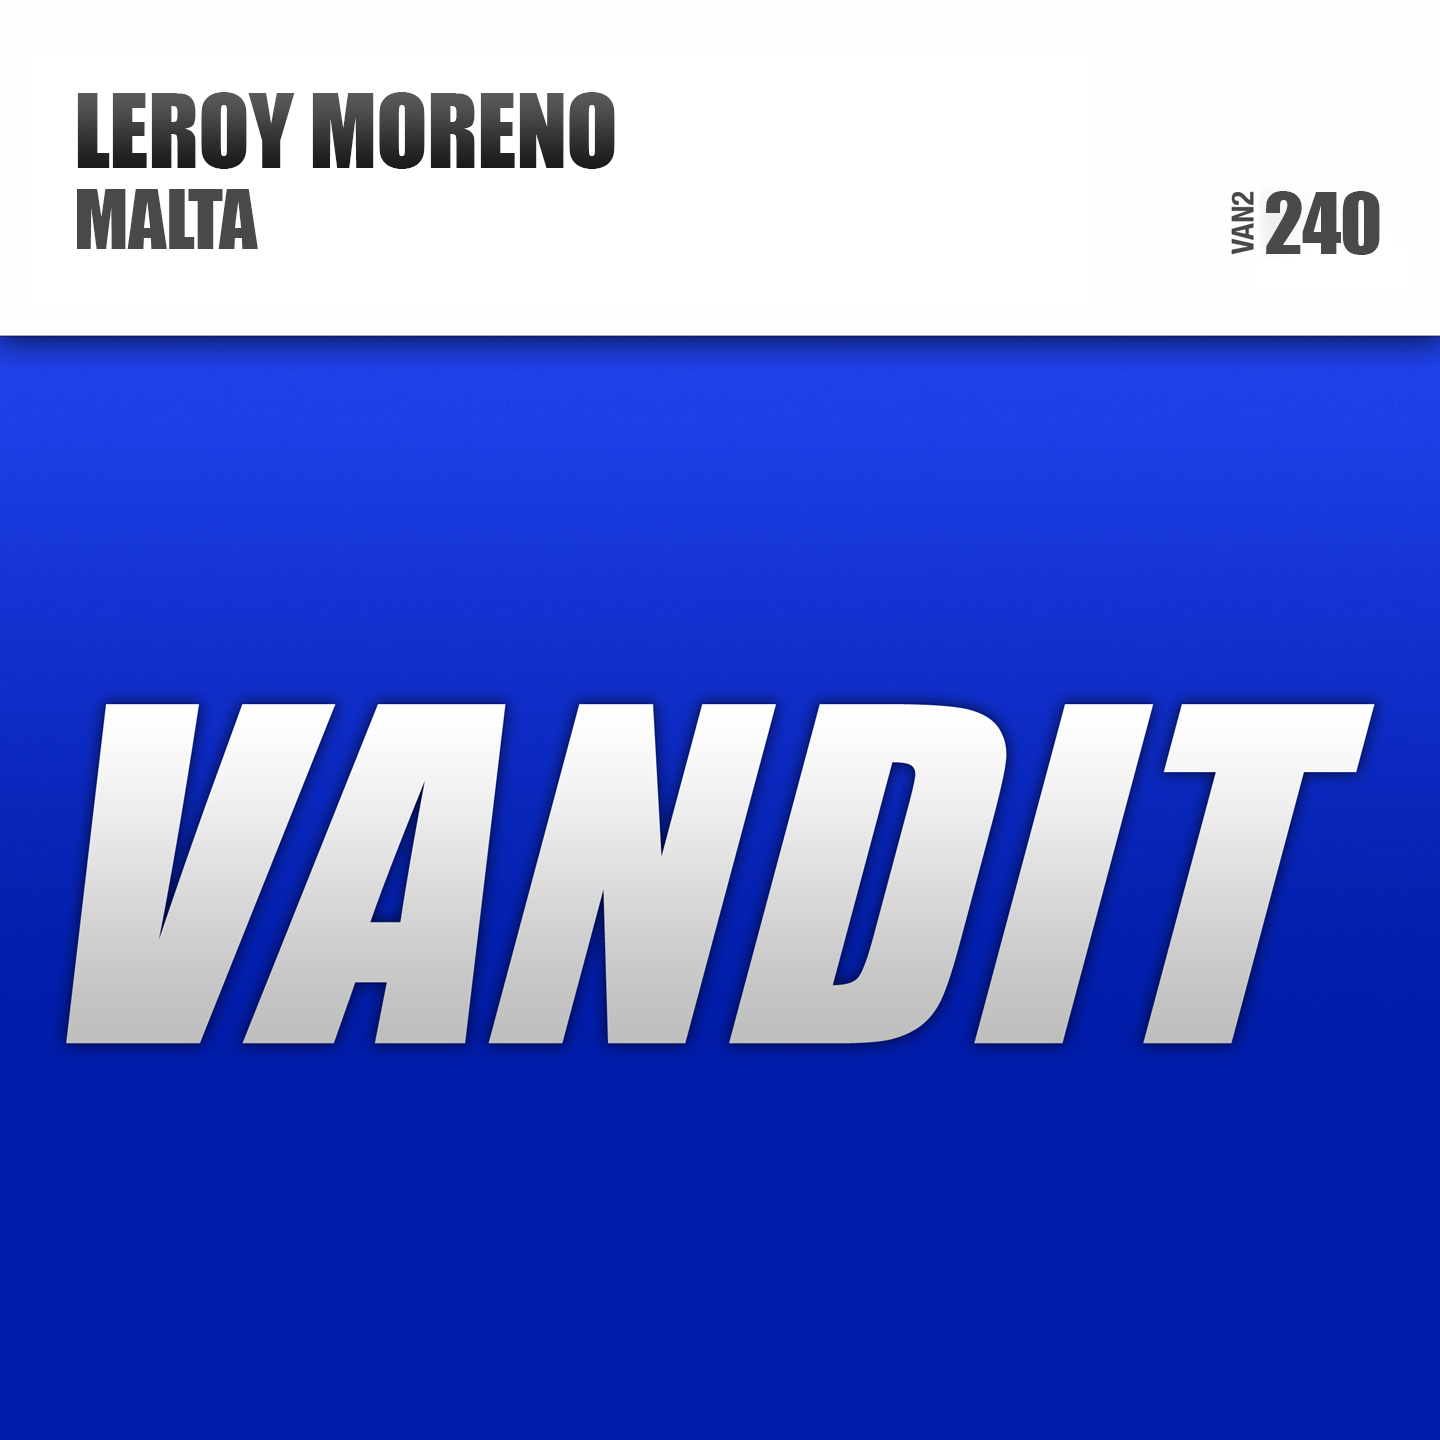 leroy-moreno-malta